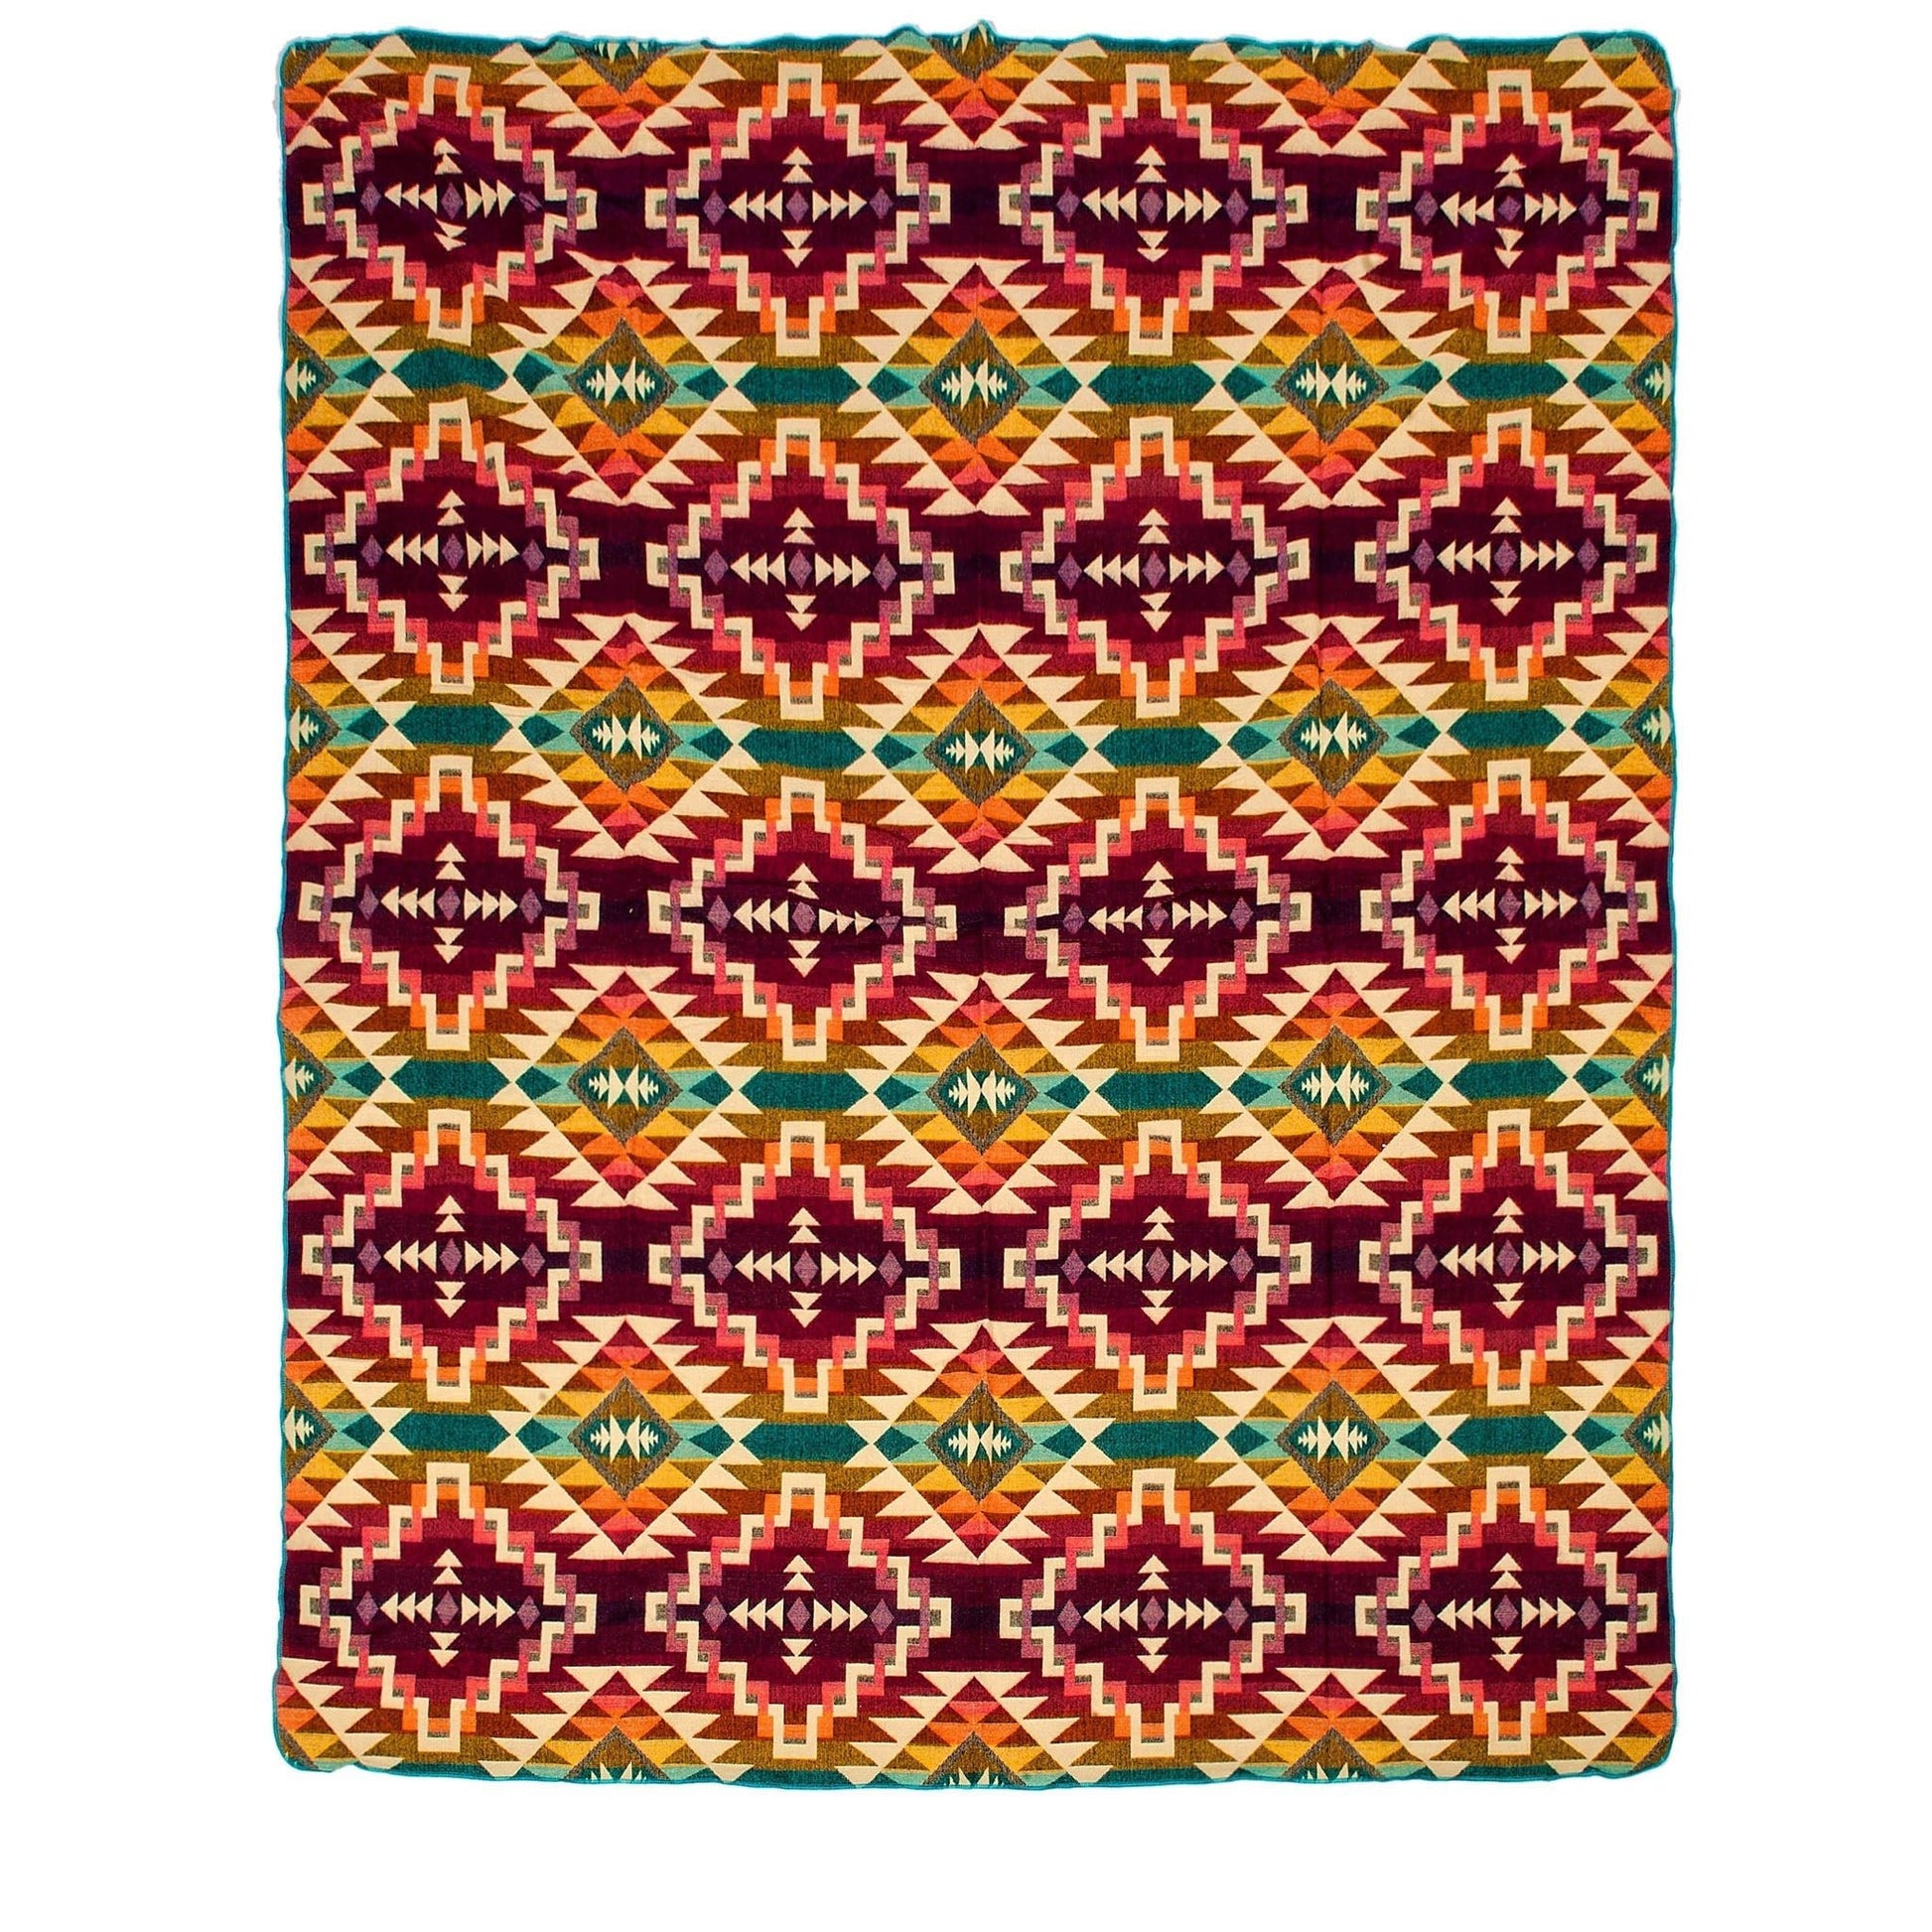 Authentische Chimborazo Decke aus Alpaka Wolle - 195 x 235 cm - Pinker Mix - Vandeley